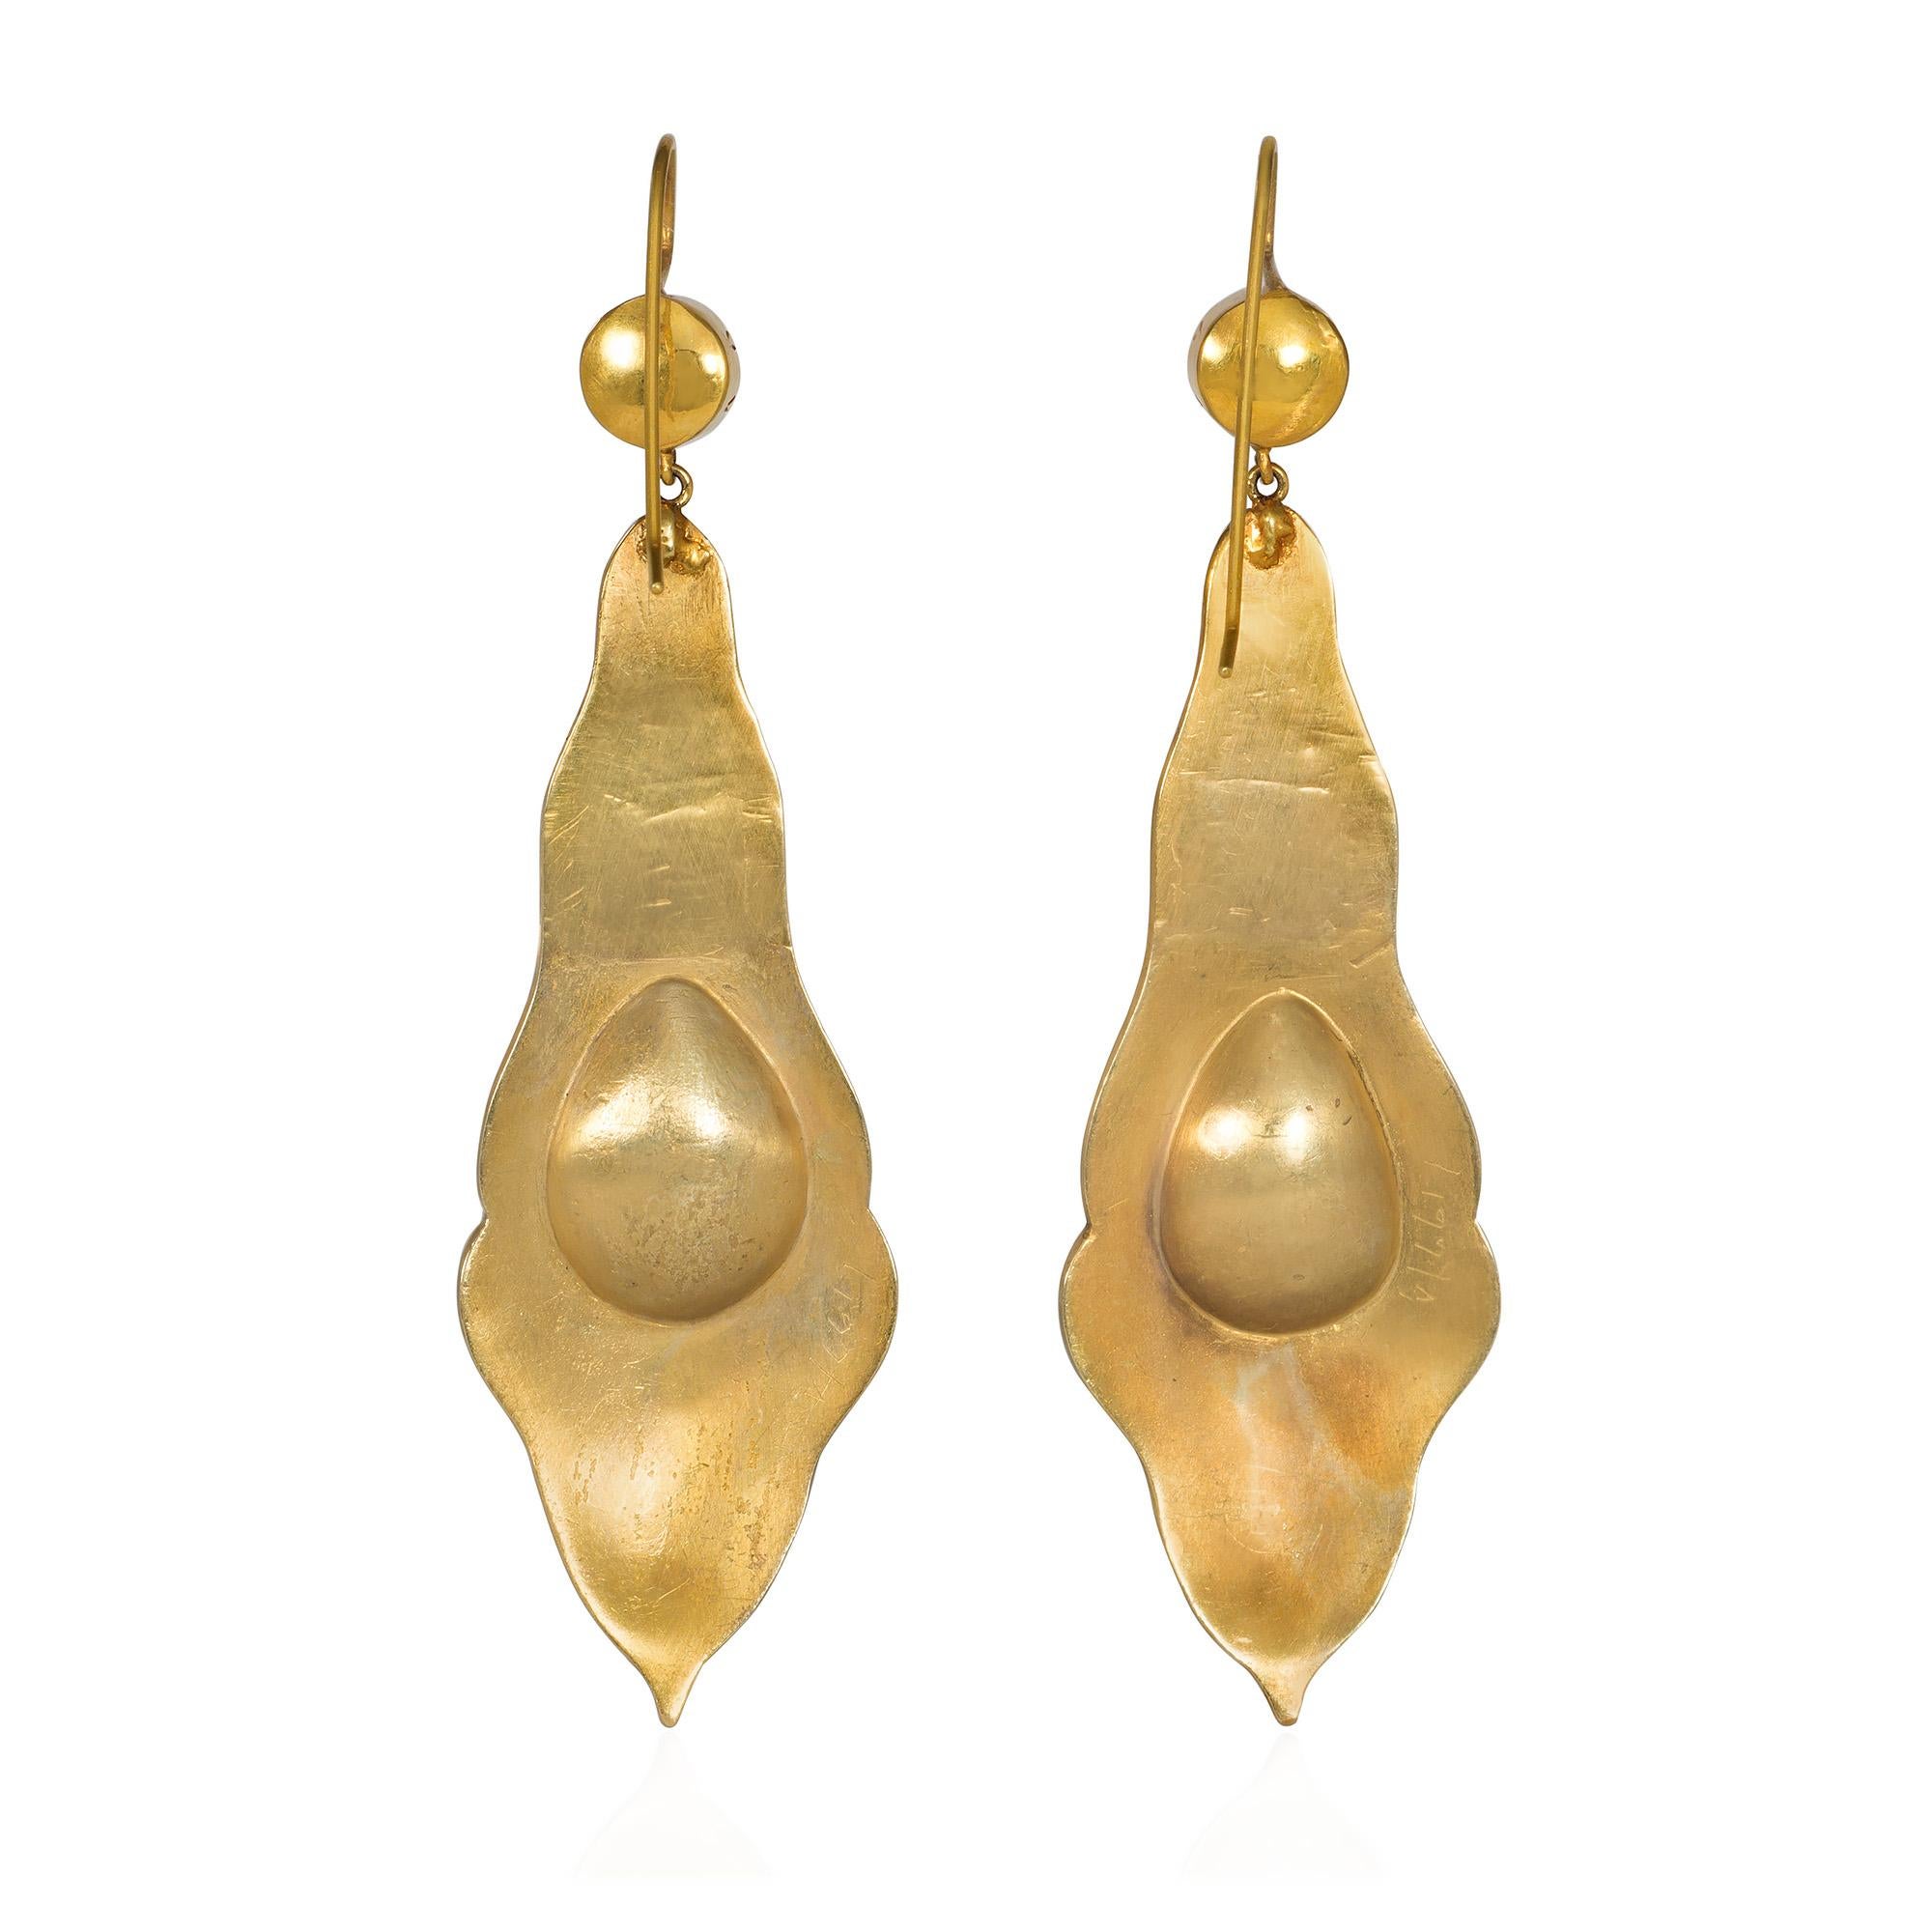 Georgian Antique Gold and Cabochon Garnet Pendant Earrings with Repoussé Decoration For Sale